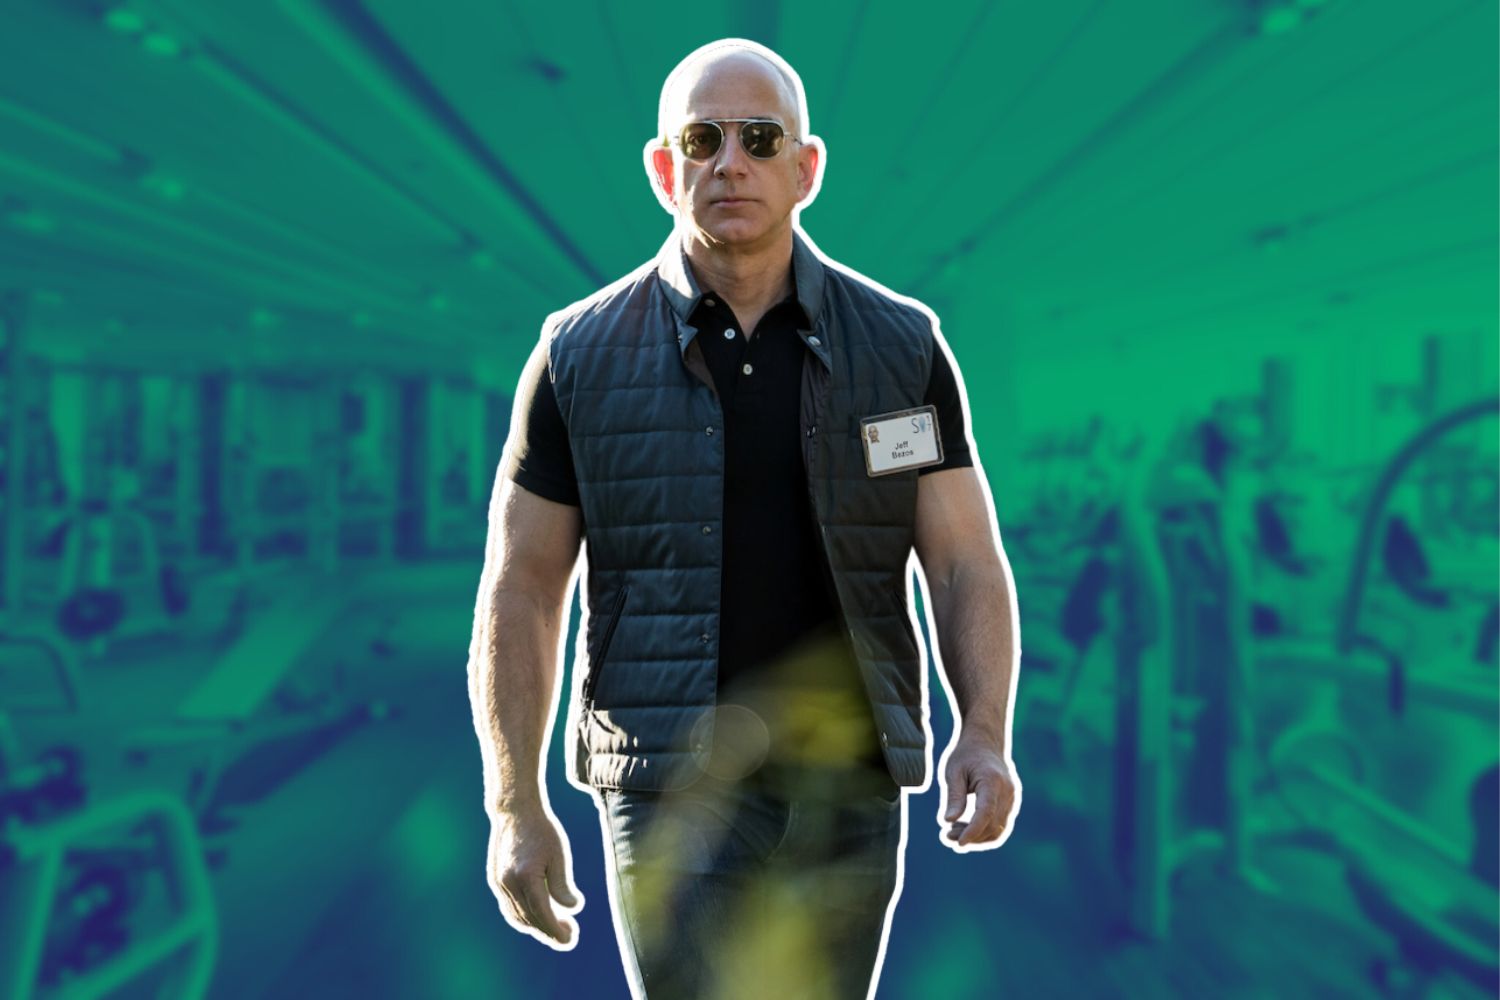 El fornido Jeff Bezos revela el secreto para mantenerse "monstruosamente" en forma después de los cuarenta